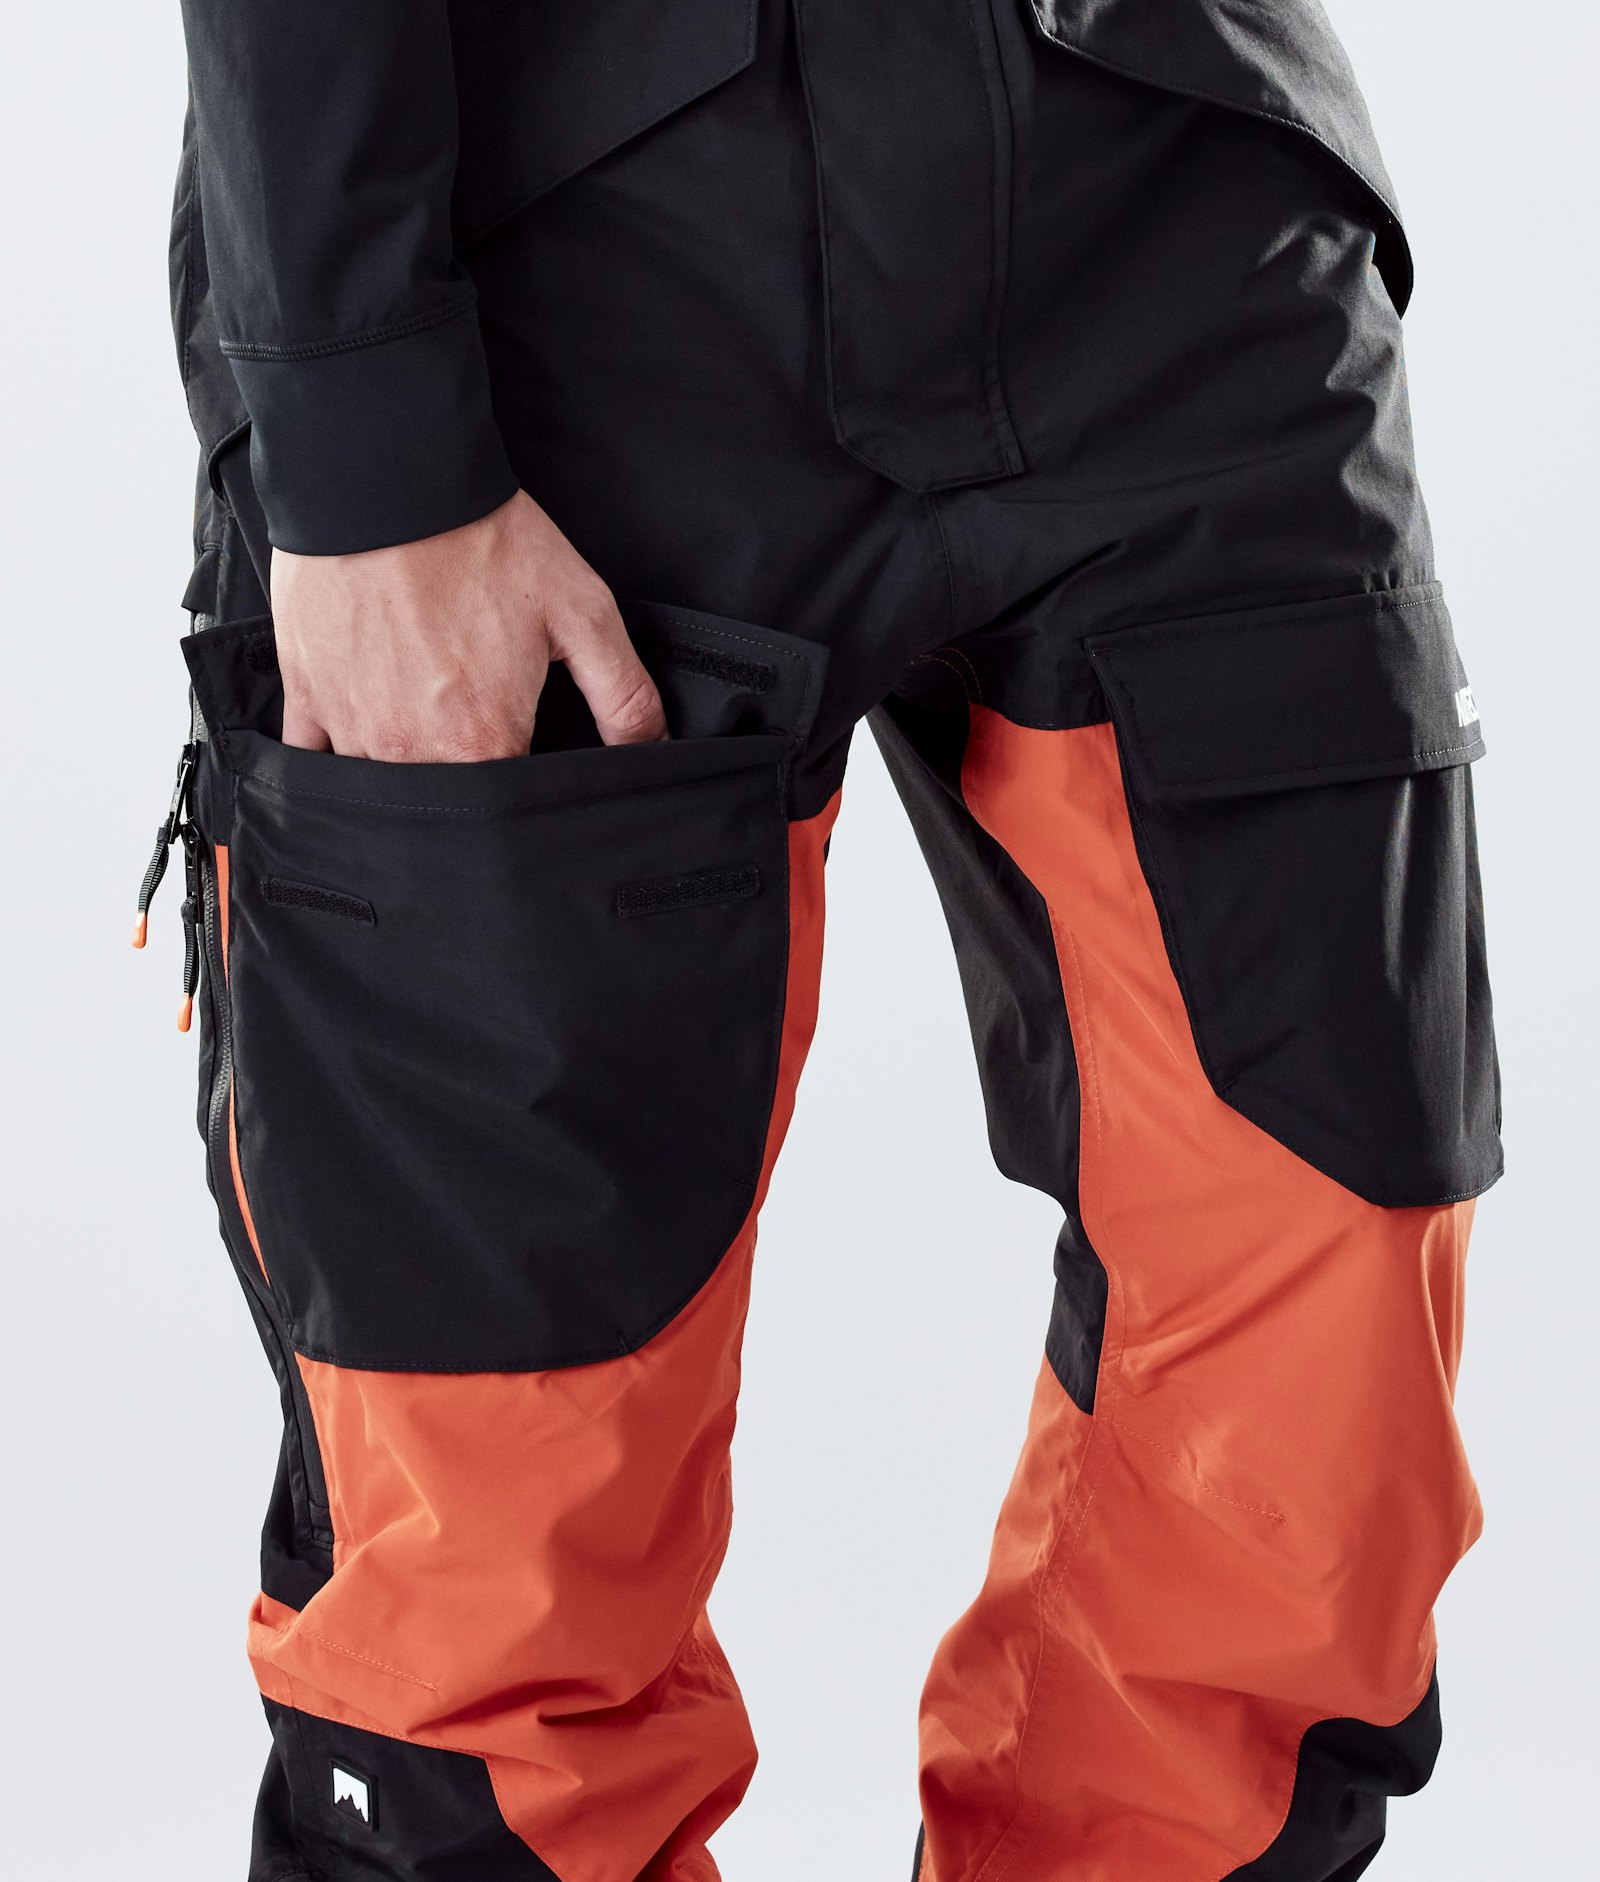 Montec Fawk 2020 Pantalones Esquí Hombre Black/Orange